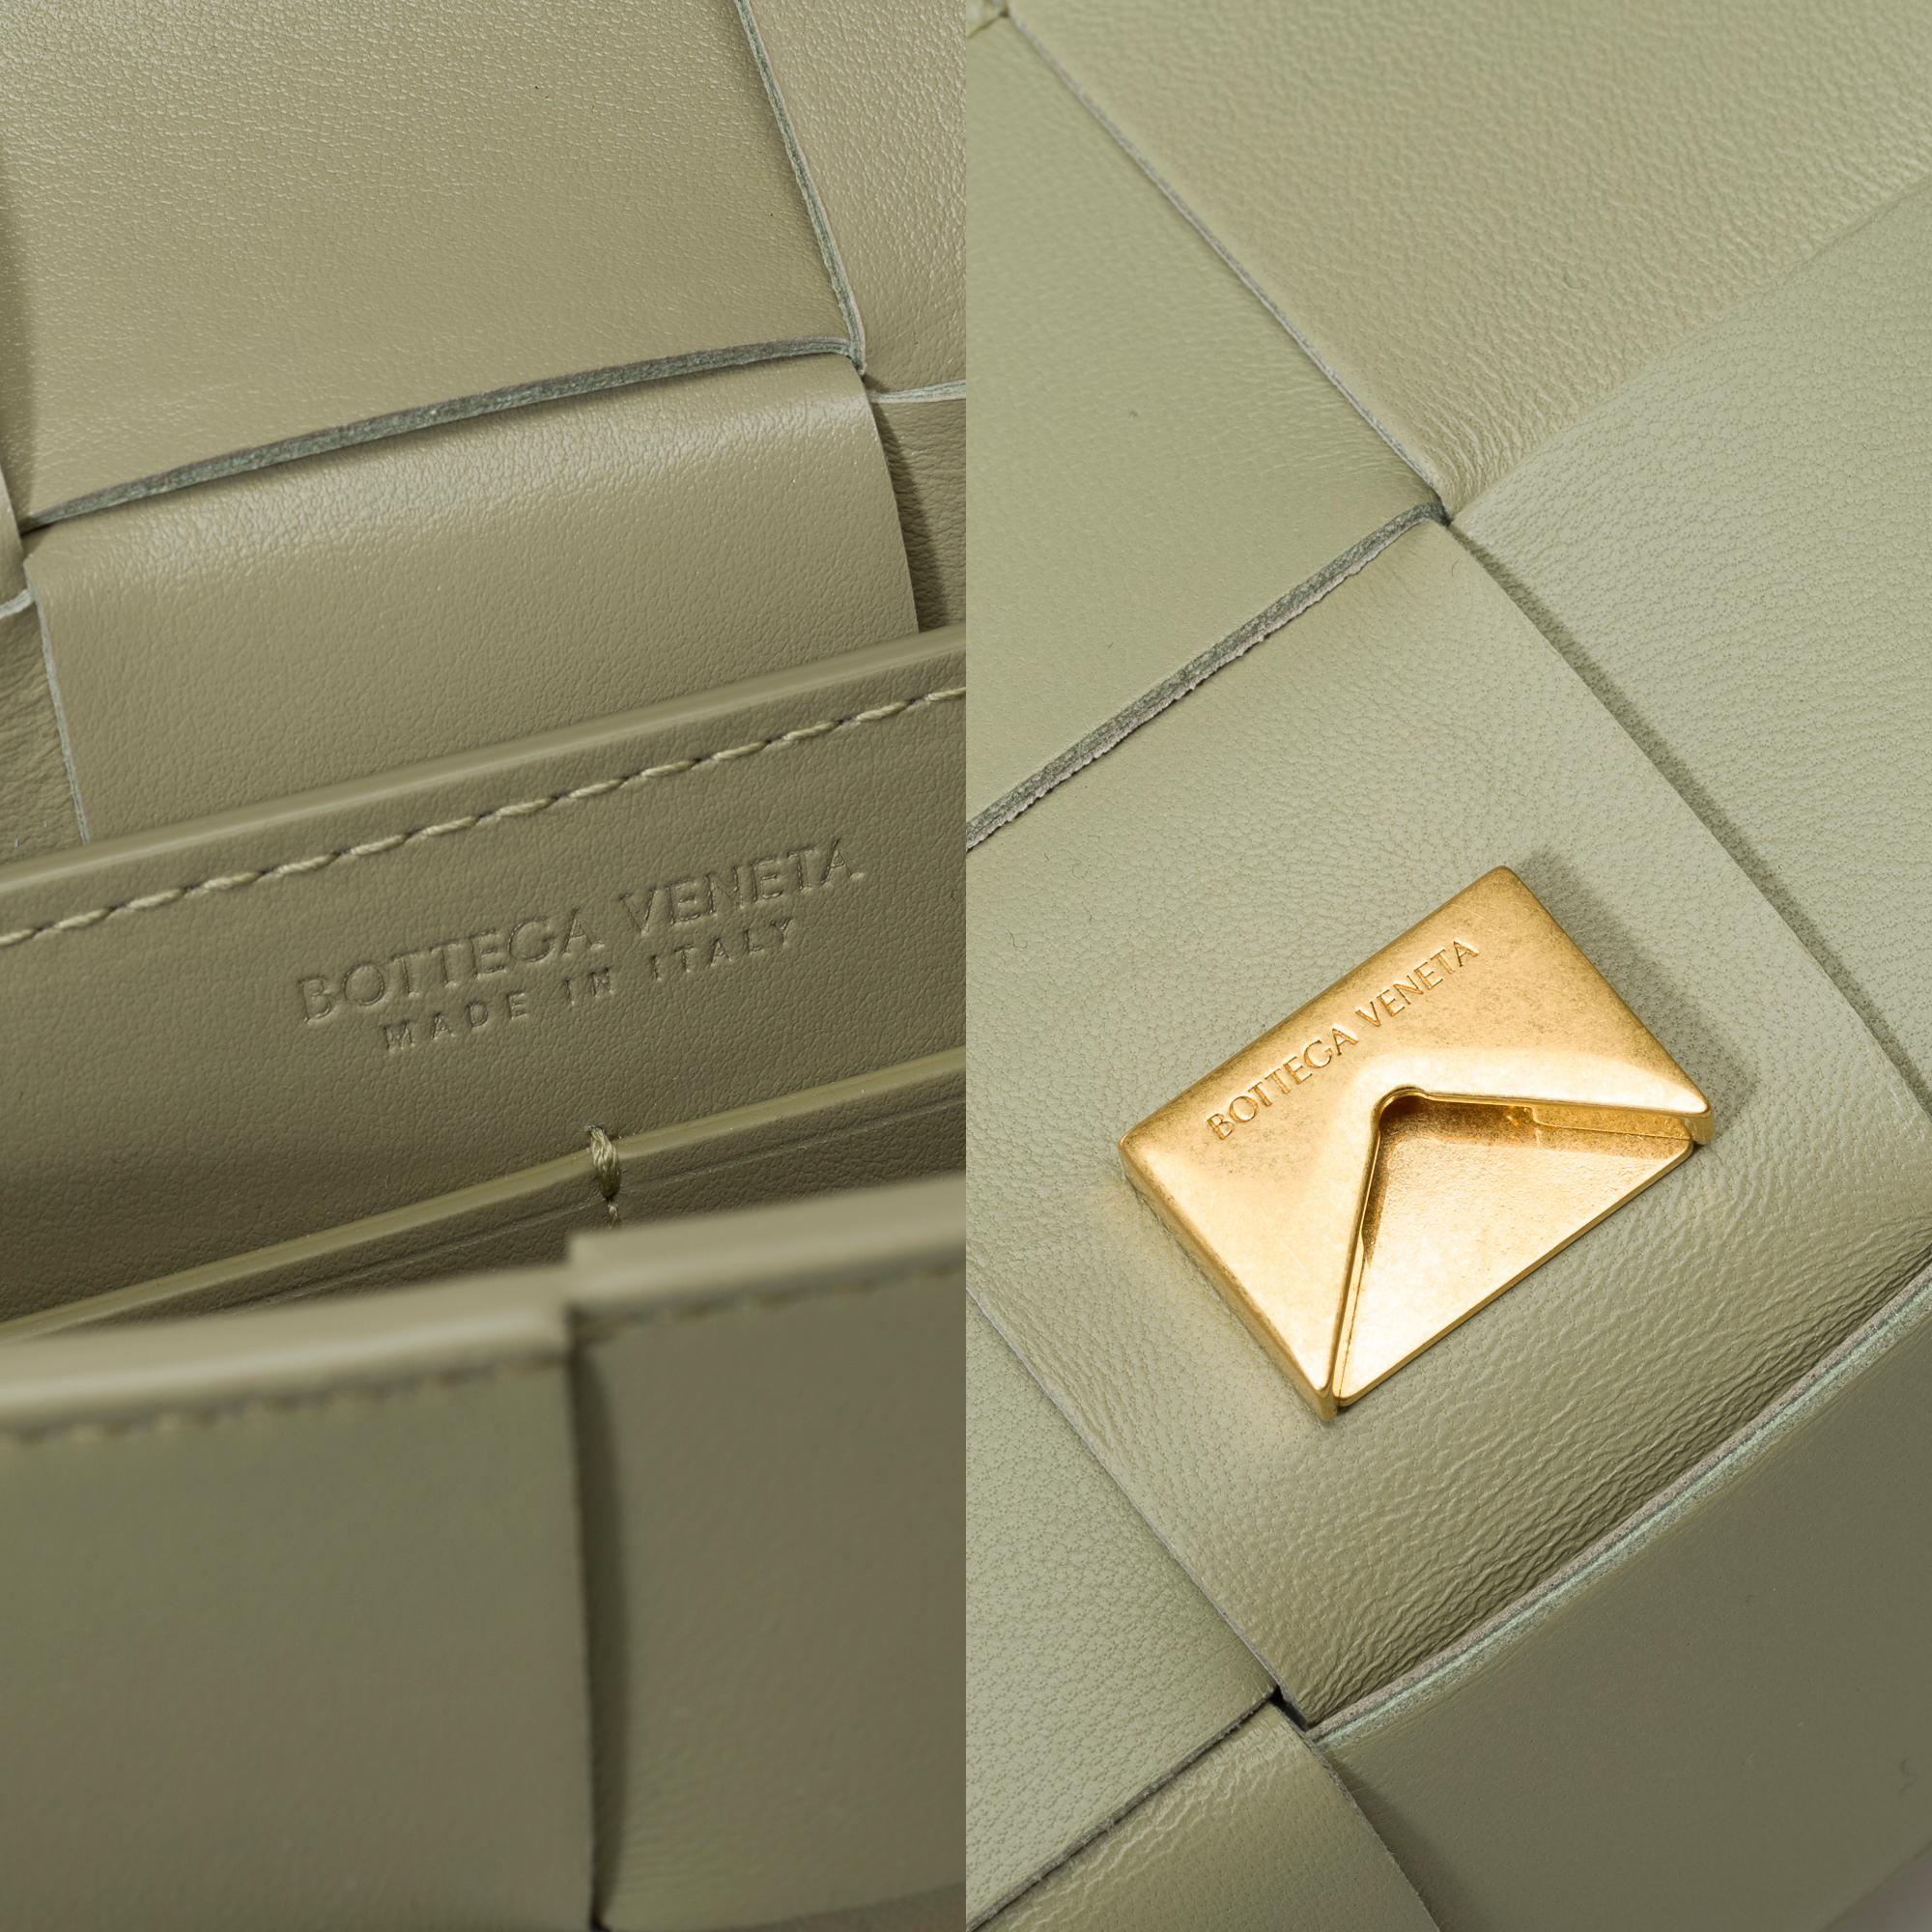 Bottega Veneta Cassette 23 shoulder bag in green lambskin leather, GHW For Sale 4